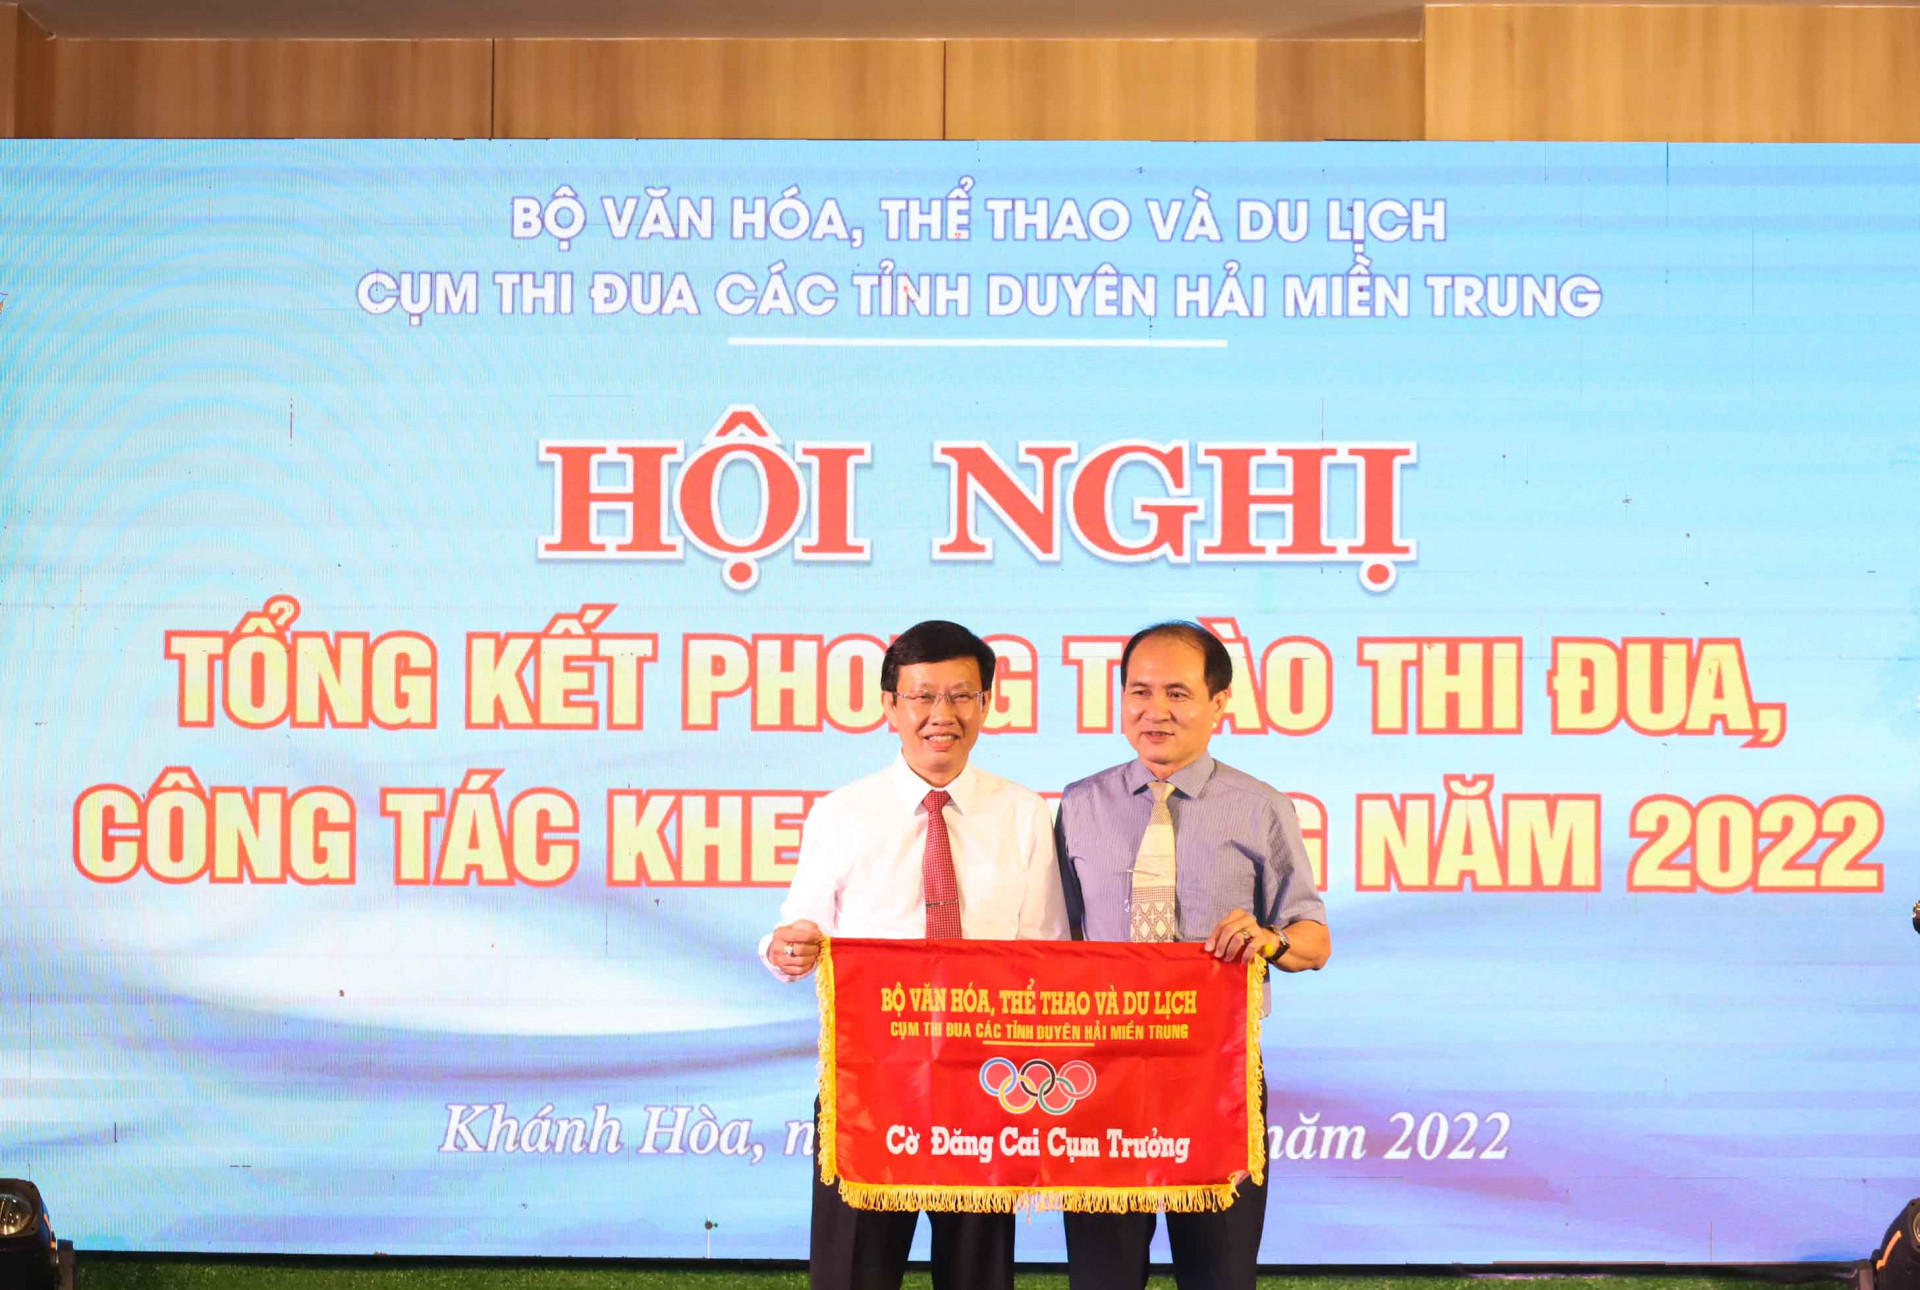 Lãnh đạo Sở Văn hóa và Thể thao tỉnh Khánh Hòa (phải) trao cờ cụm trưởng cho lãnh đạo Sở Văn hóa, Thể thao và Du lịch tỉnh Ninh Thuận. 